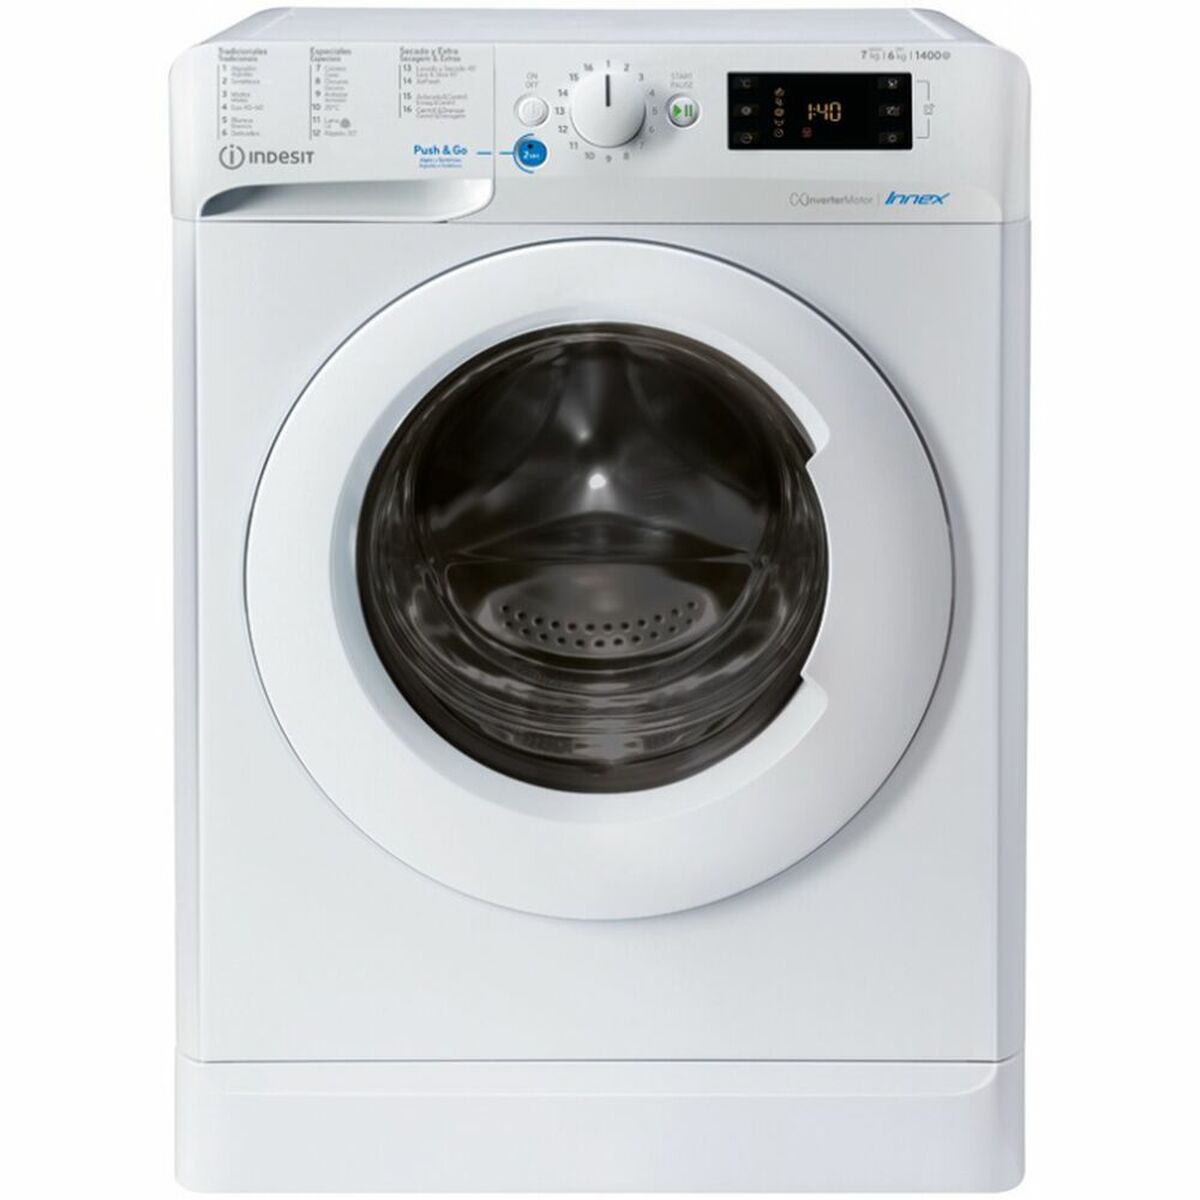 Washer - Dryer Indesit BDE761483XWSPTN 7kg / 5 kg White 1400 rpm